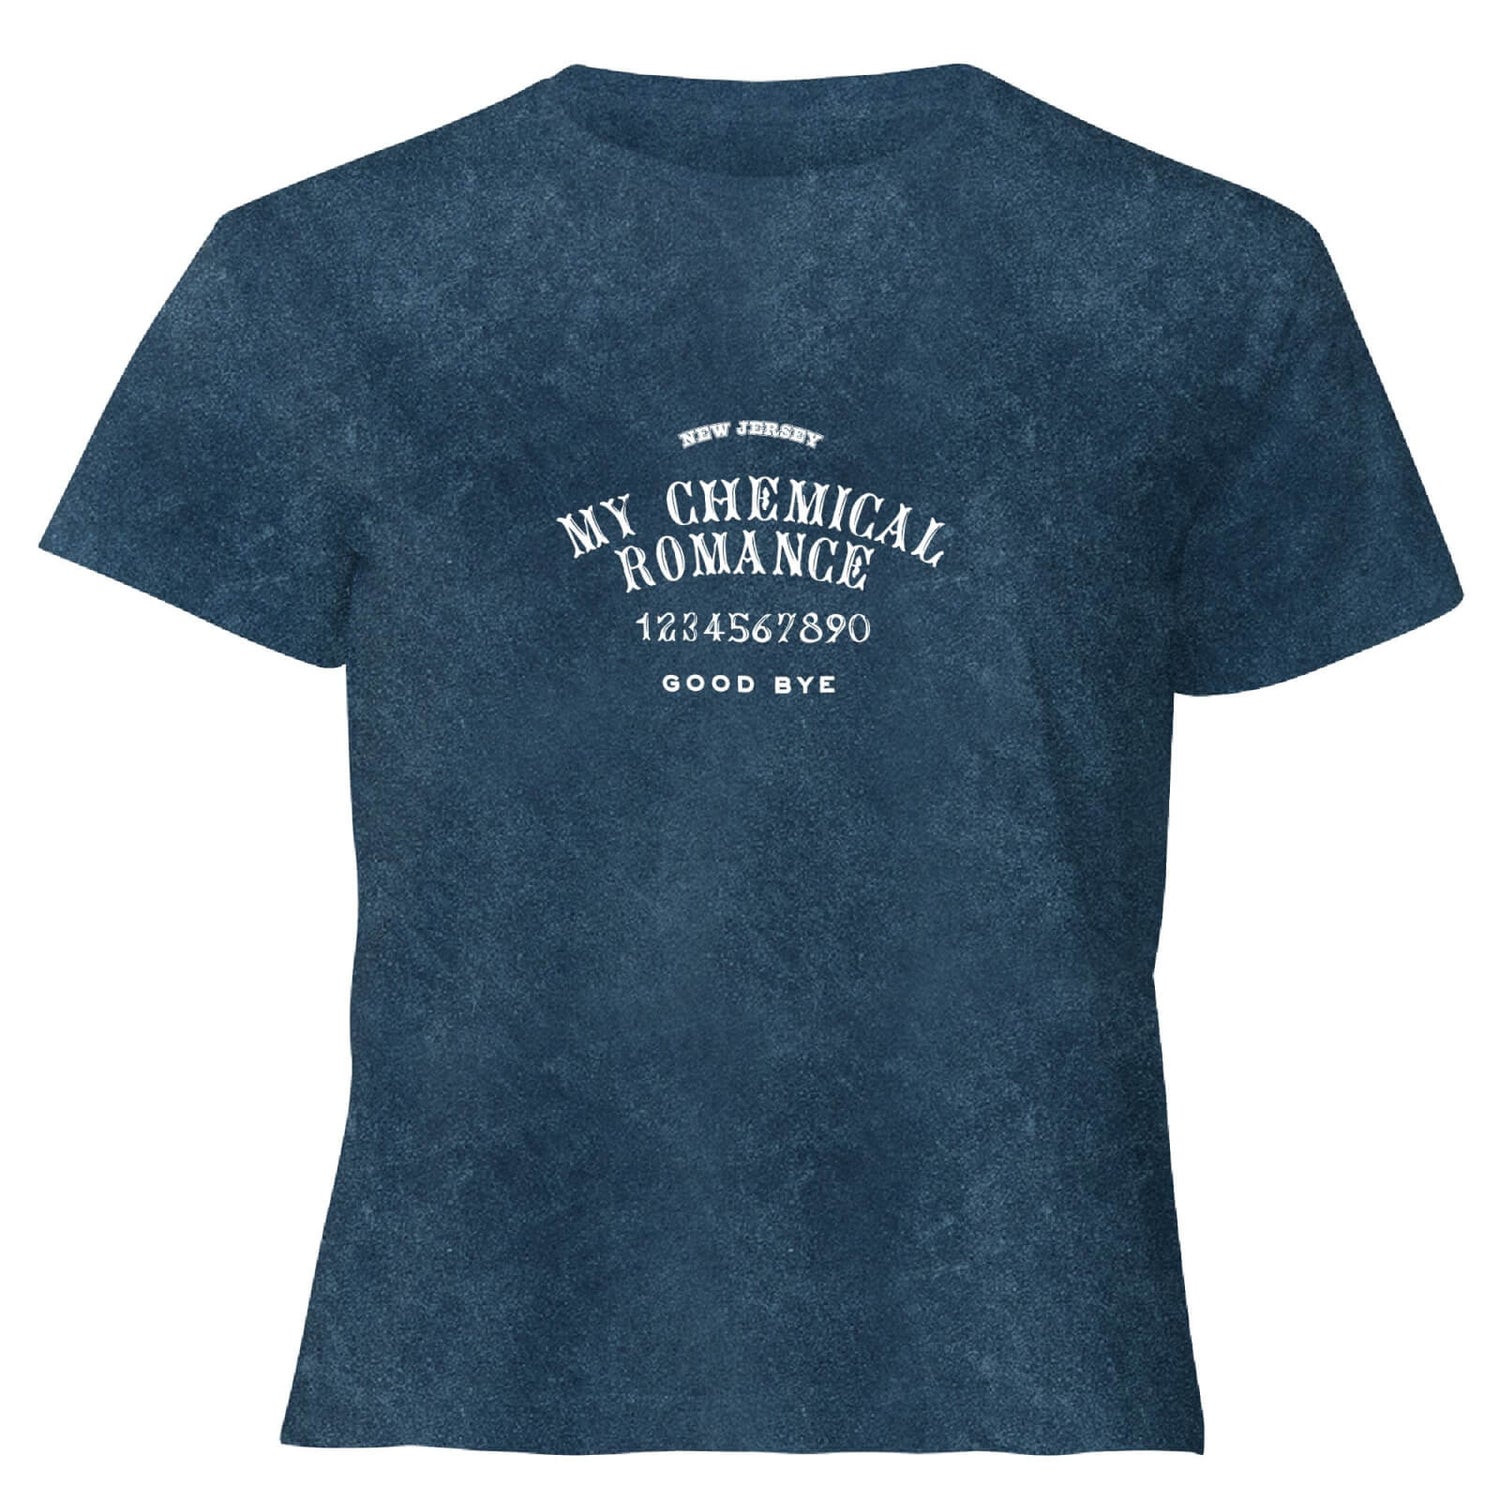 Camiseta corta Ouija para mujer de My Chemical Romance - Azul marino lavado ácido